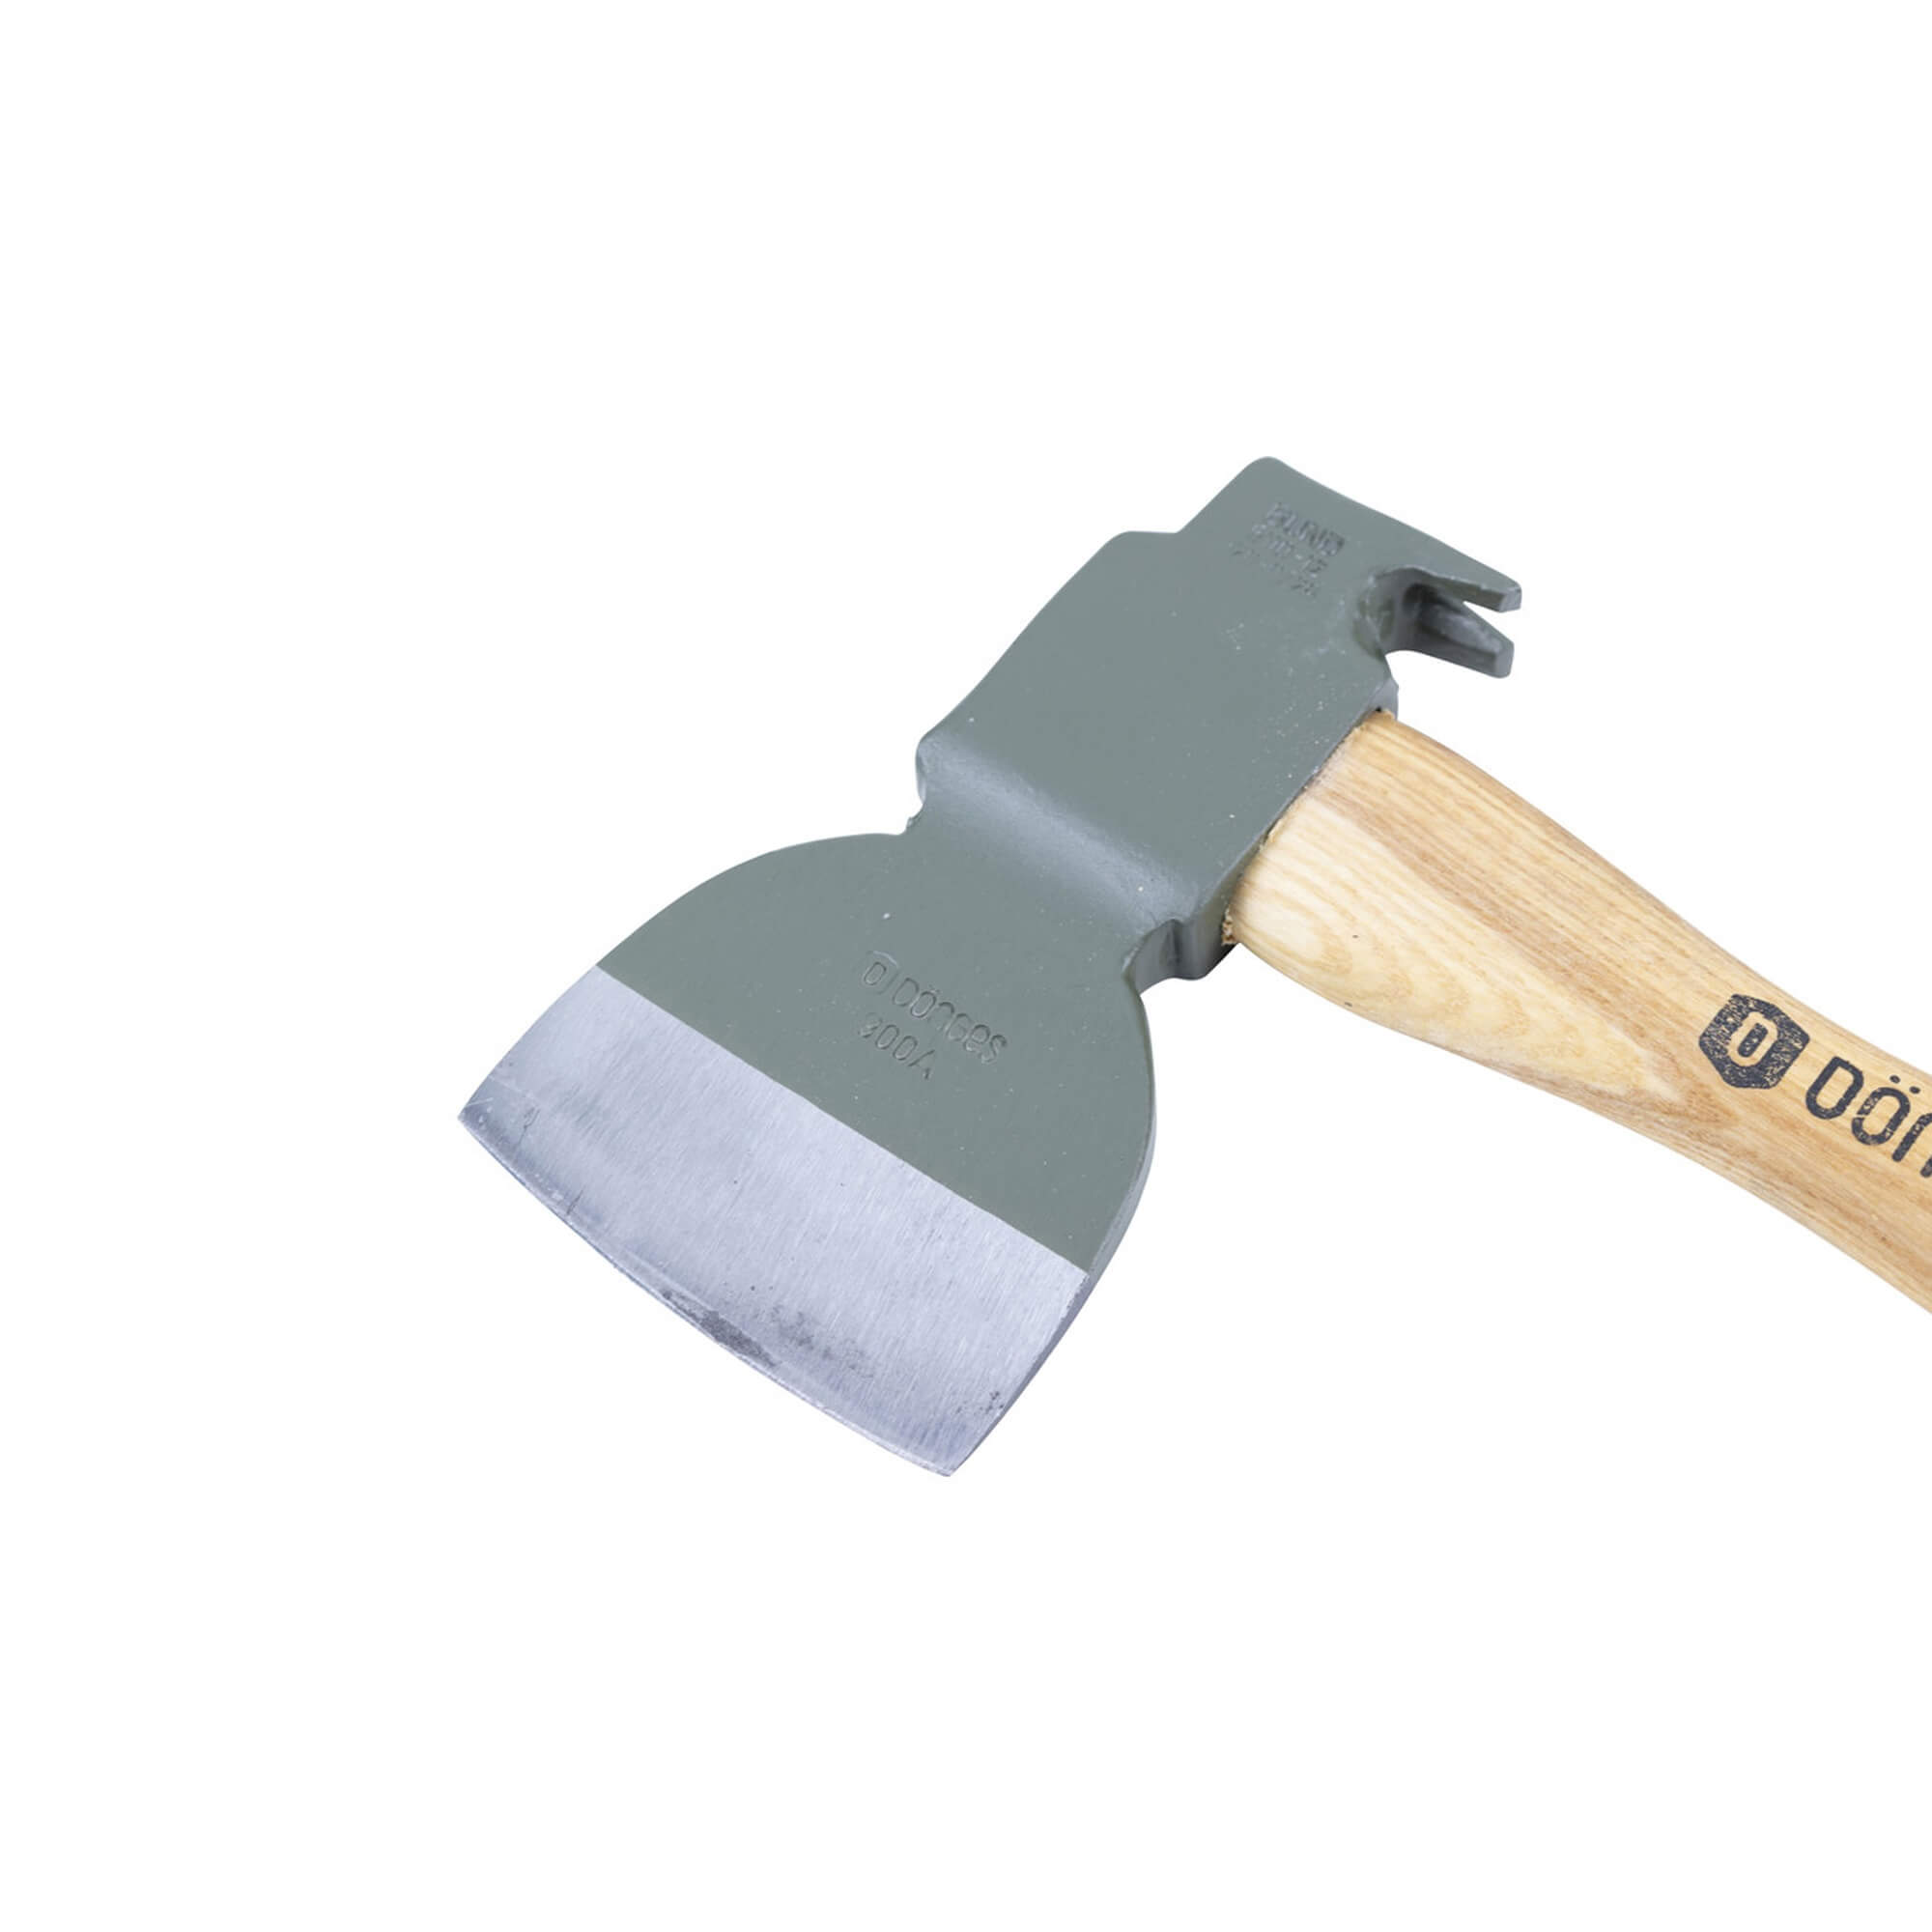 Dönges Claw hammer